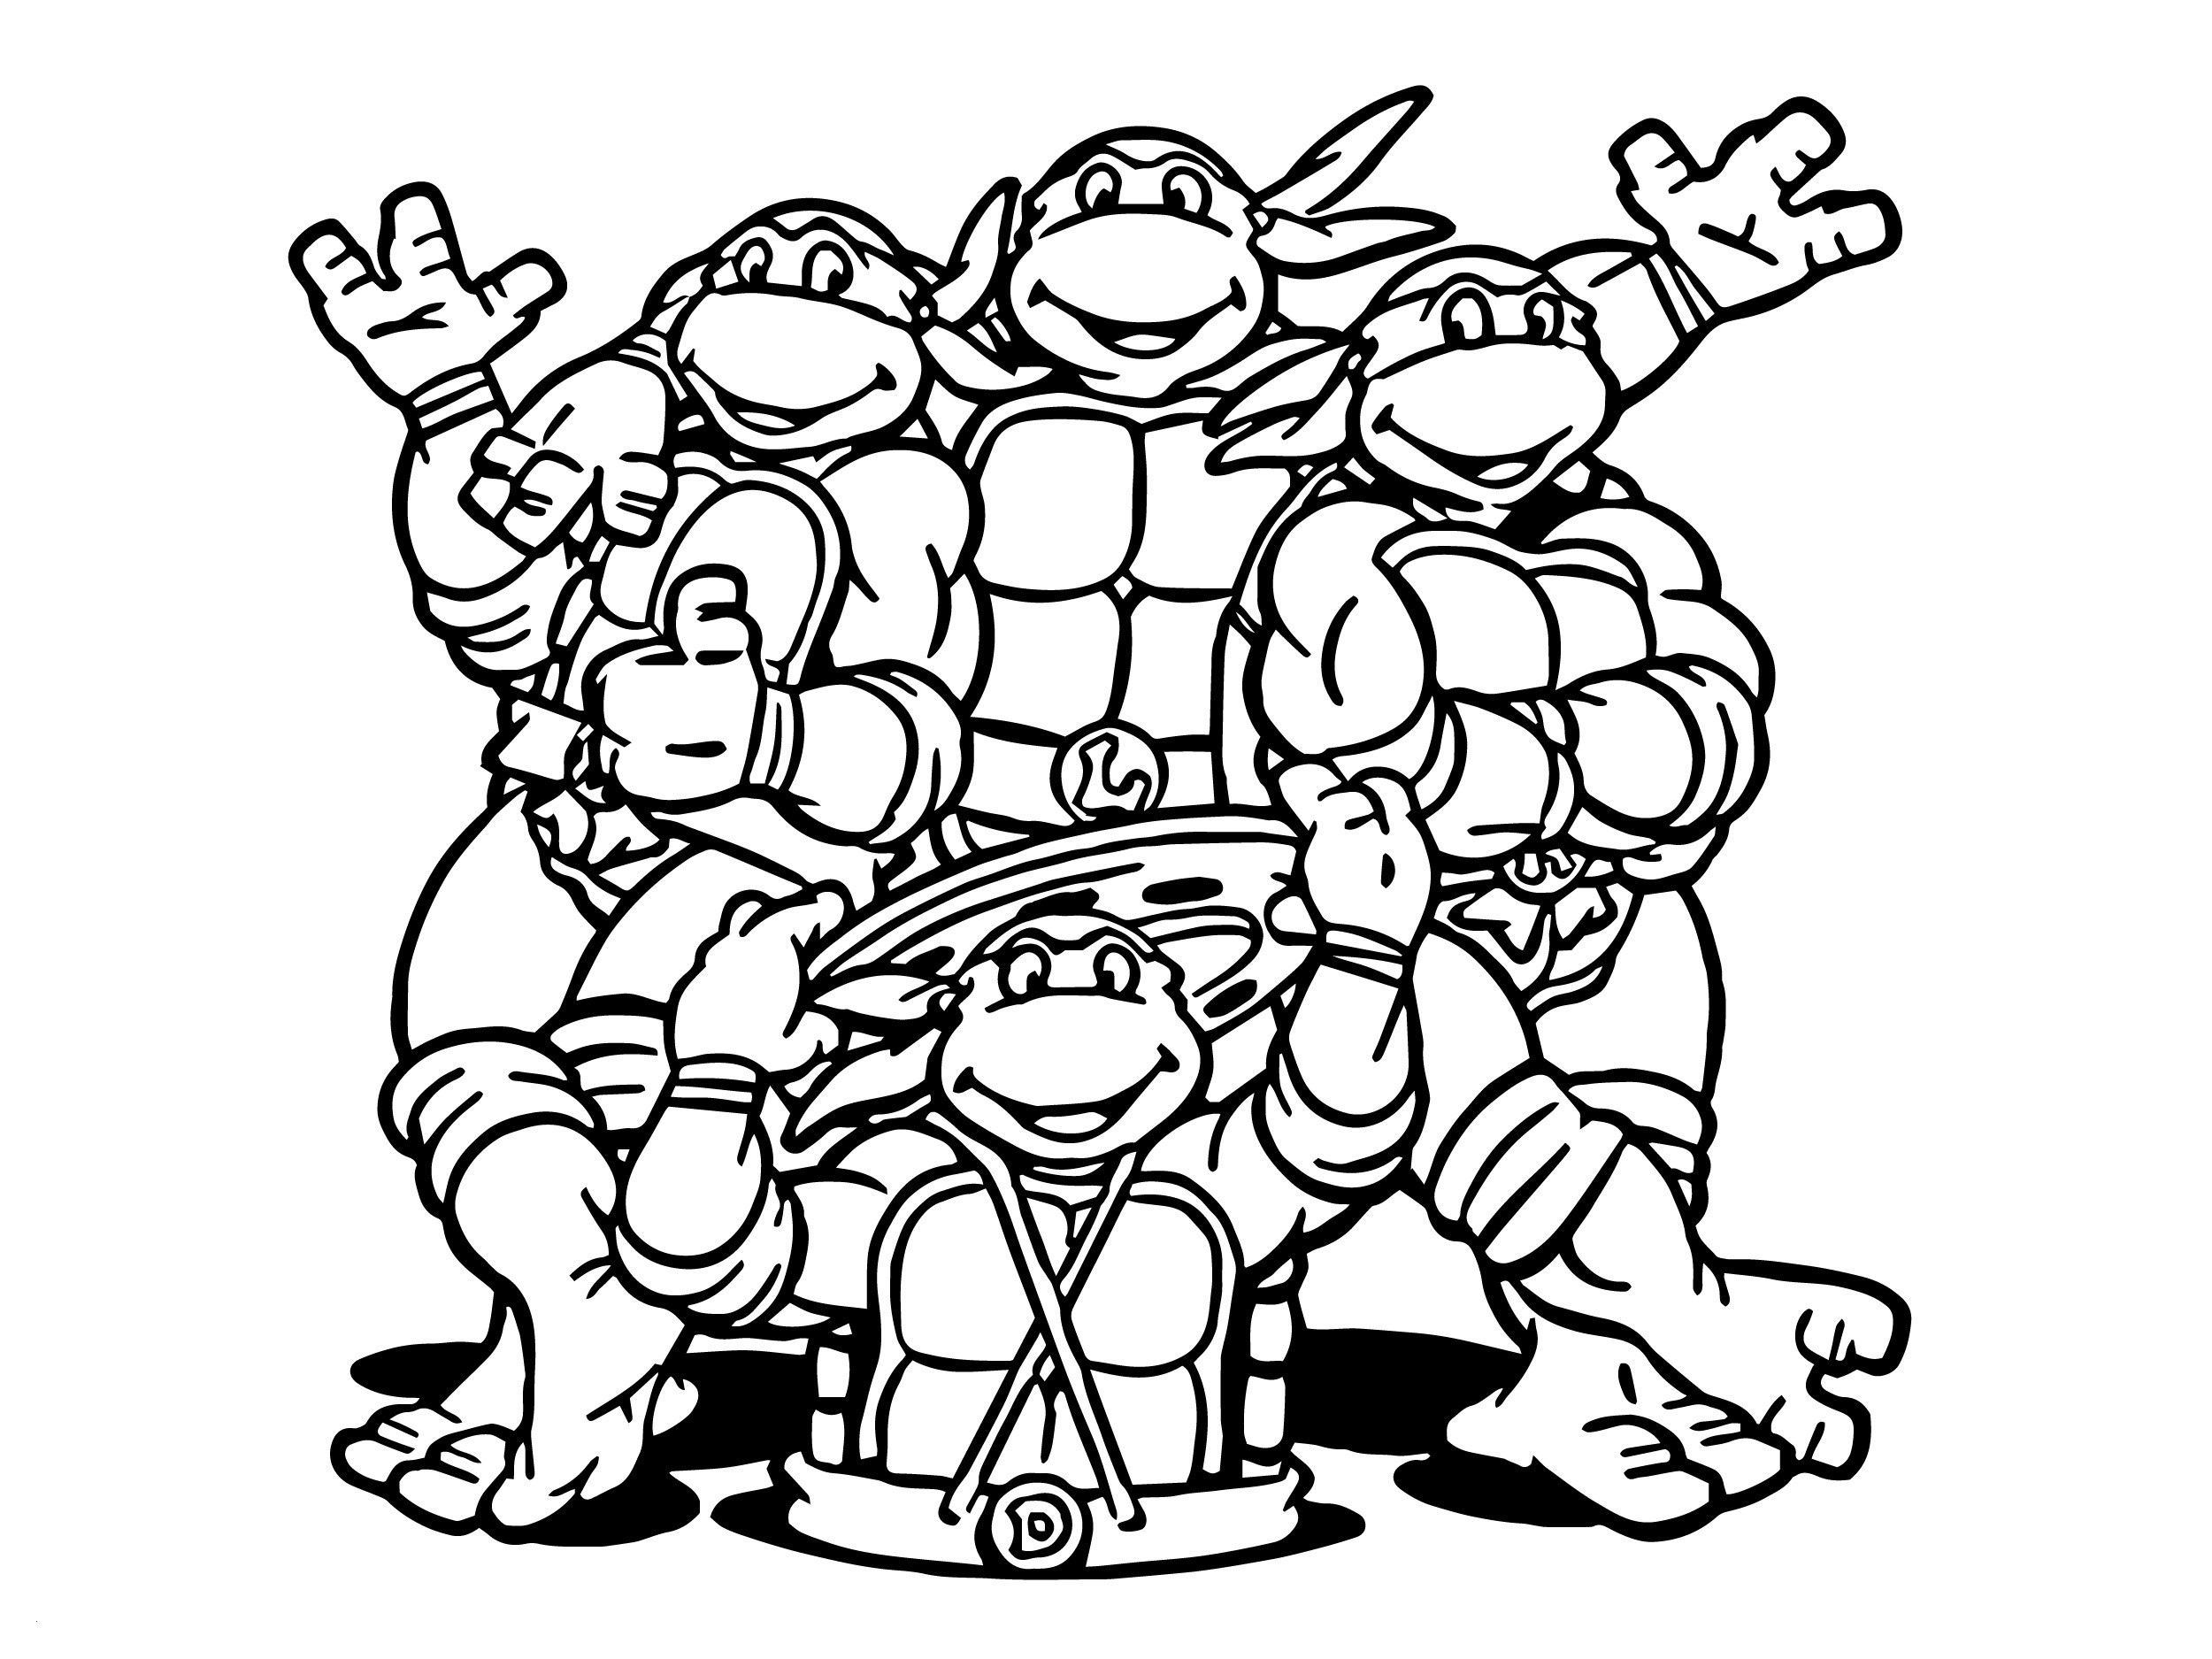 Teenage Mutant Ninja Turtle Coloring Pages
 Teenage Mutant Ninja Turtles Coloring Pages Best